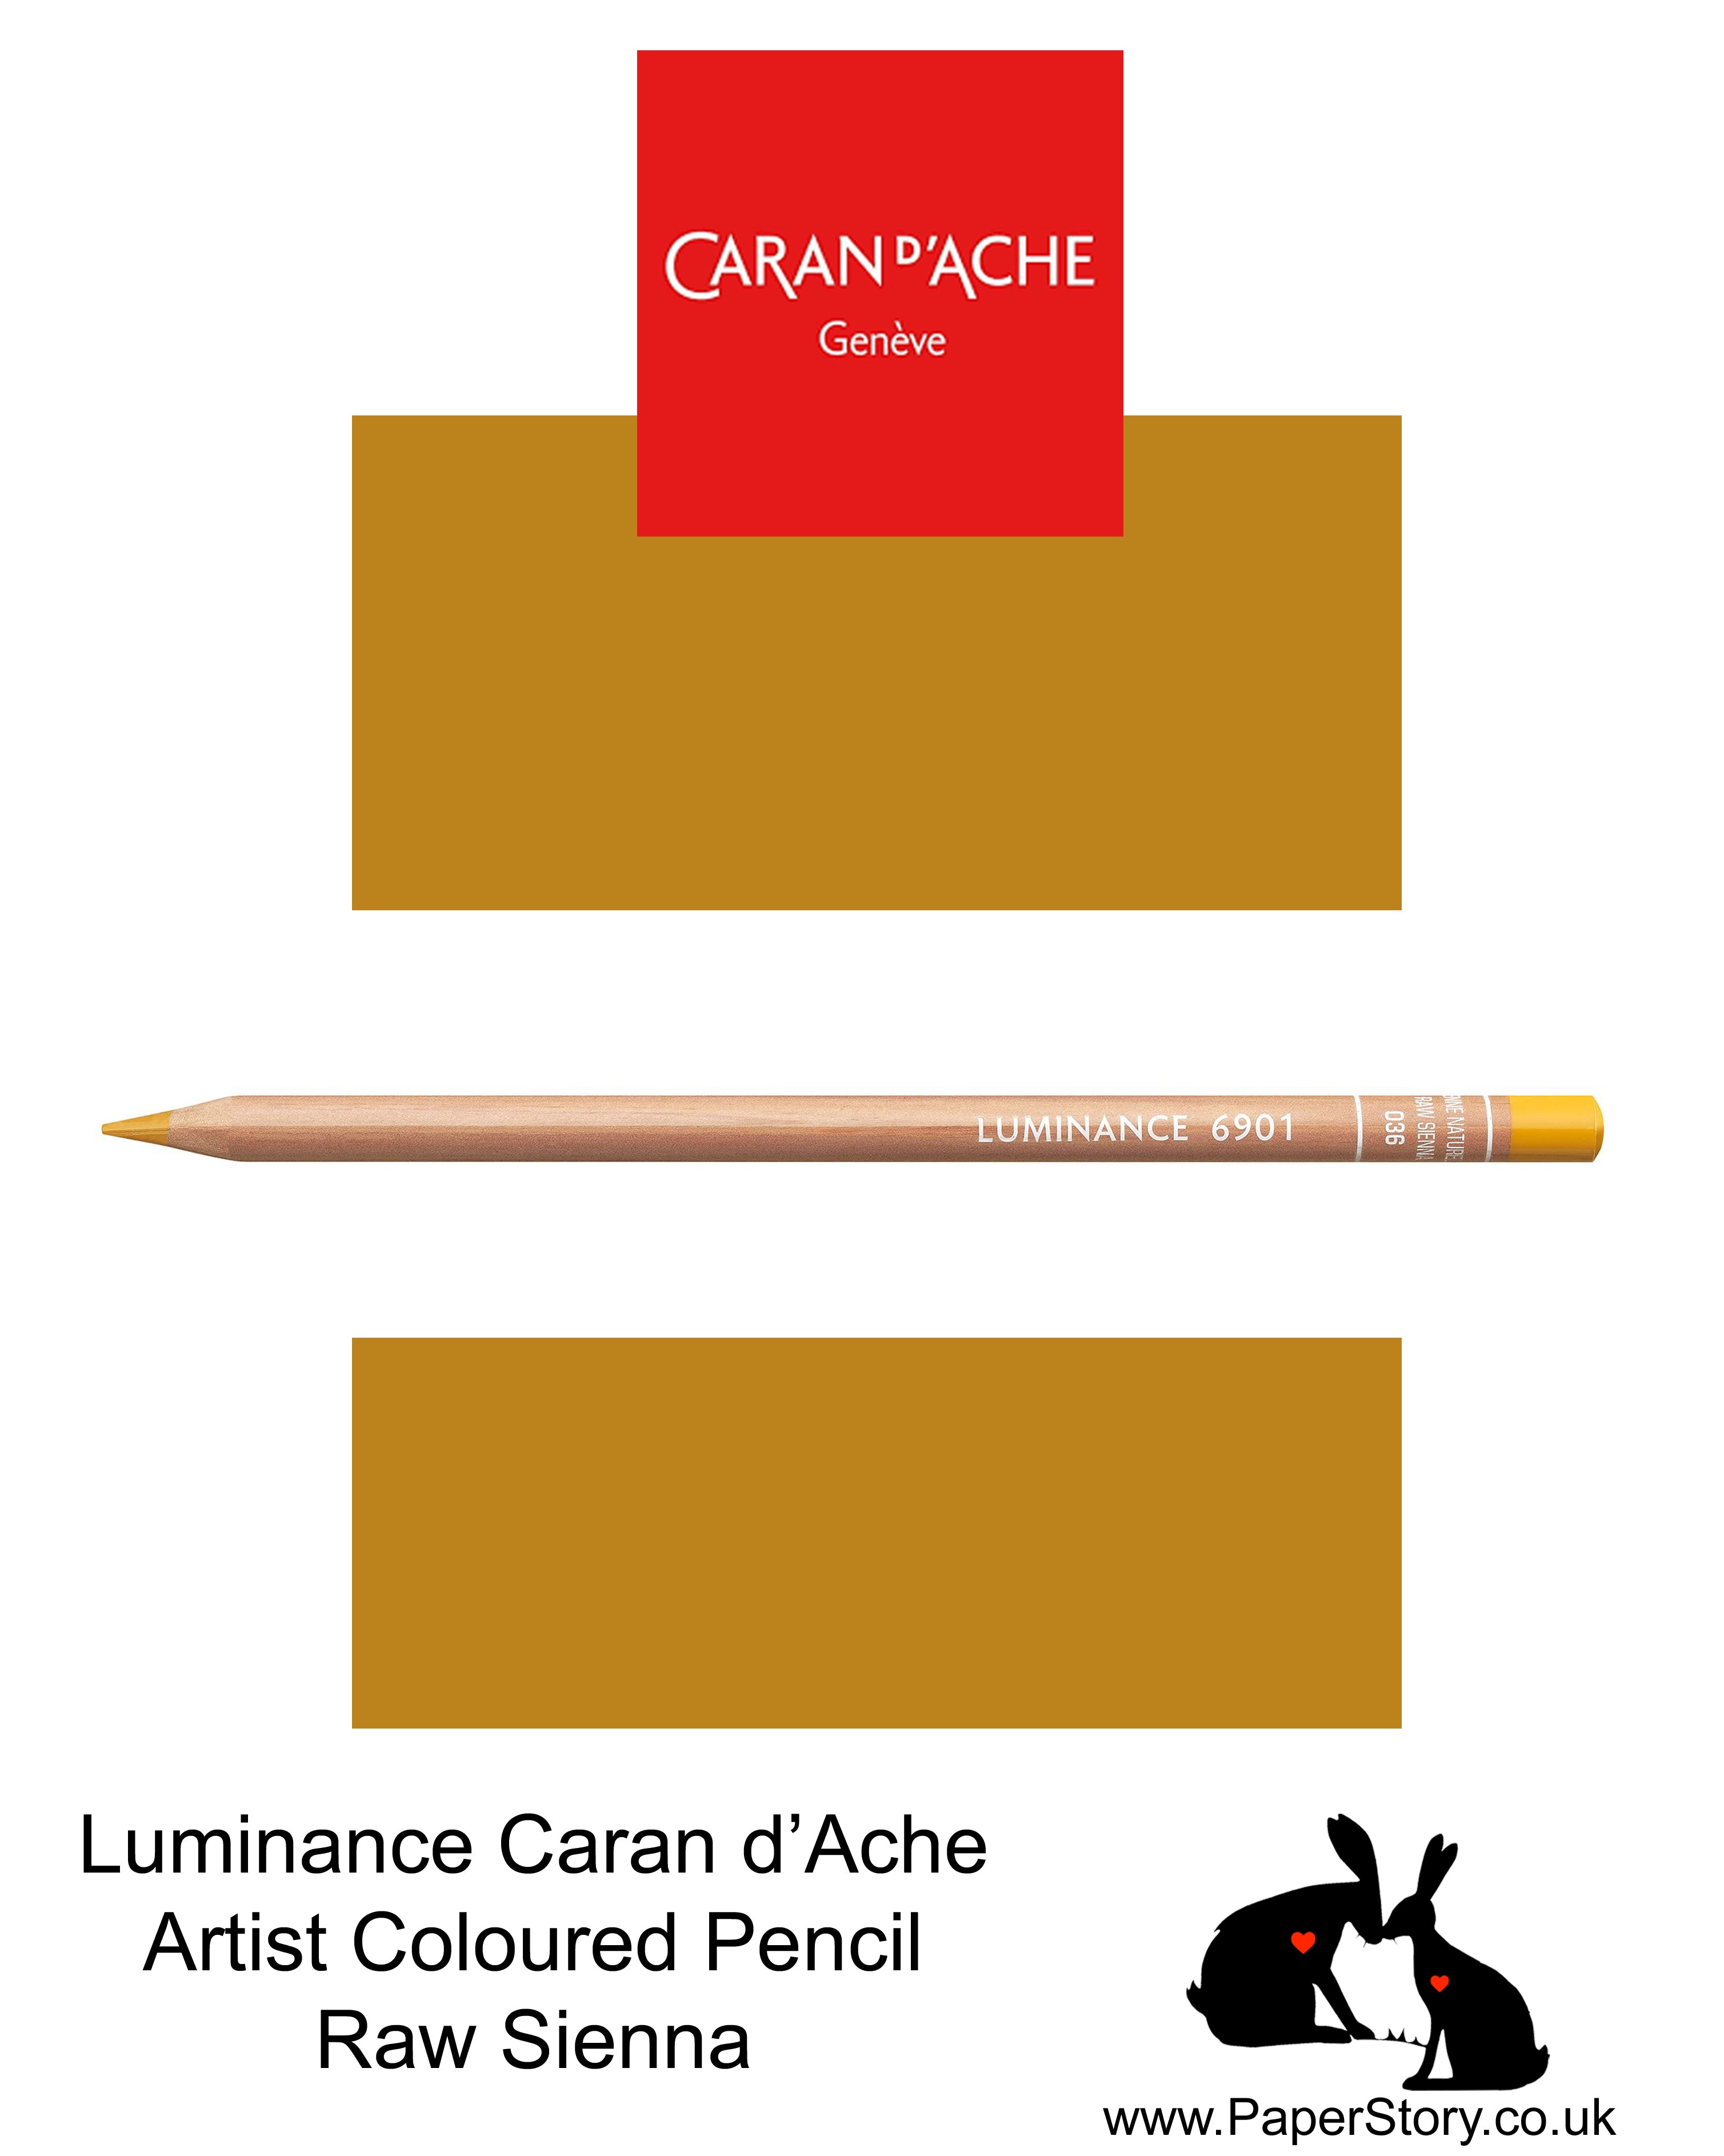 Caran d'Ache Luminance individual Artist Colour Pencils 6901 Raw Sienna 036